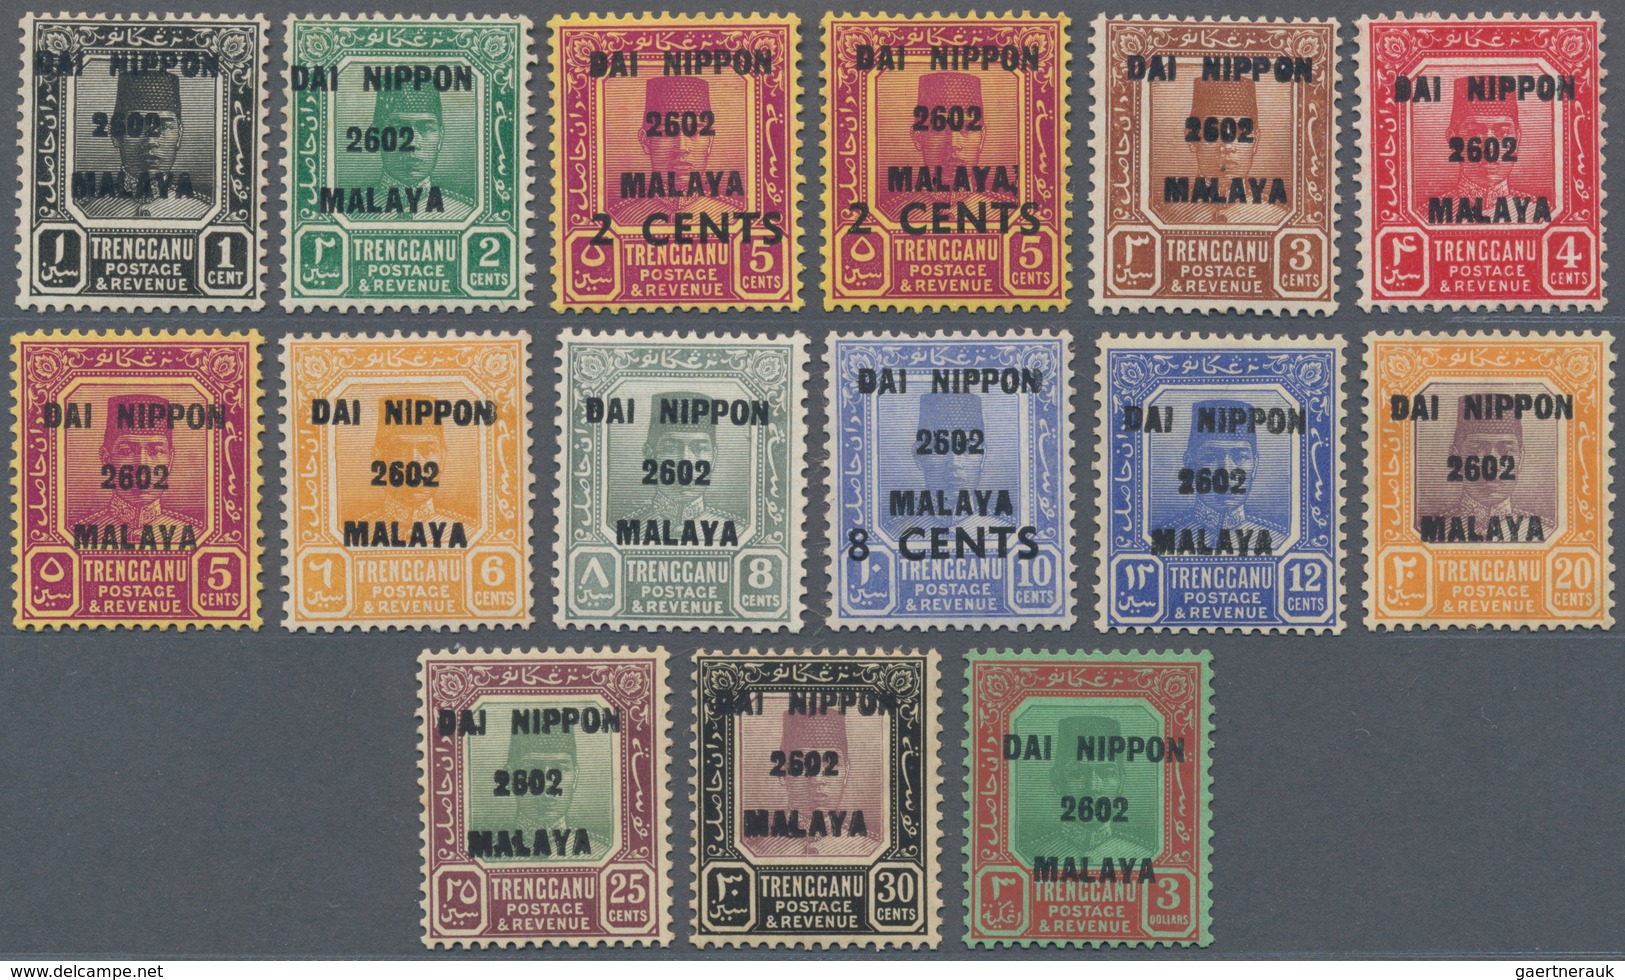 07452 Malaiische Staaten - Trengganu: Japanese Occupation, 1942, Dai Nippon / 2602 / Malaya Ovpt. Set, 1 C - Trengganu